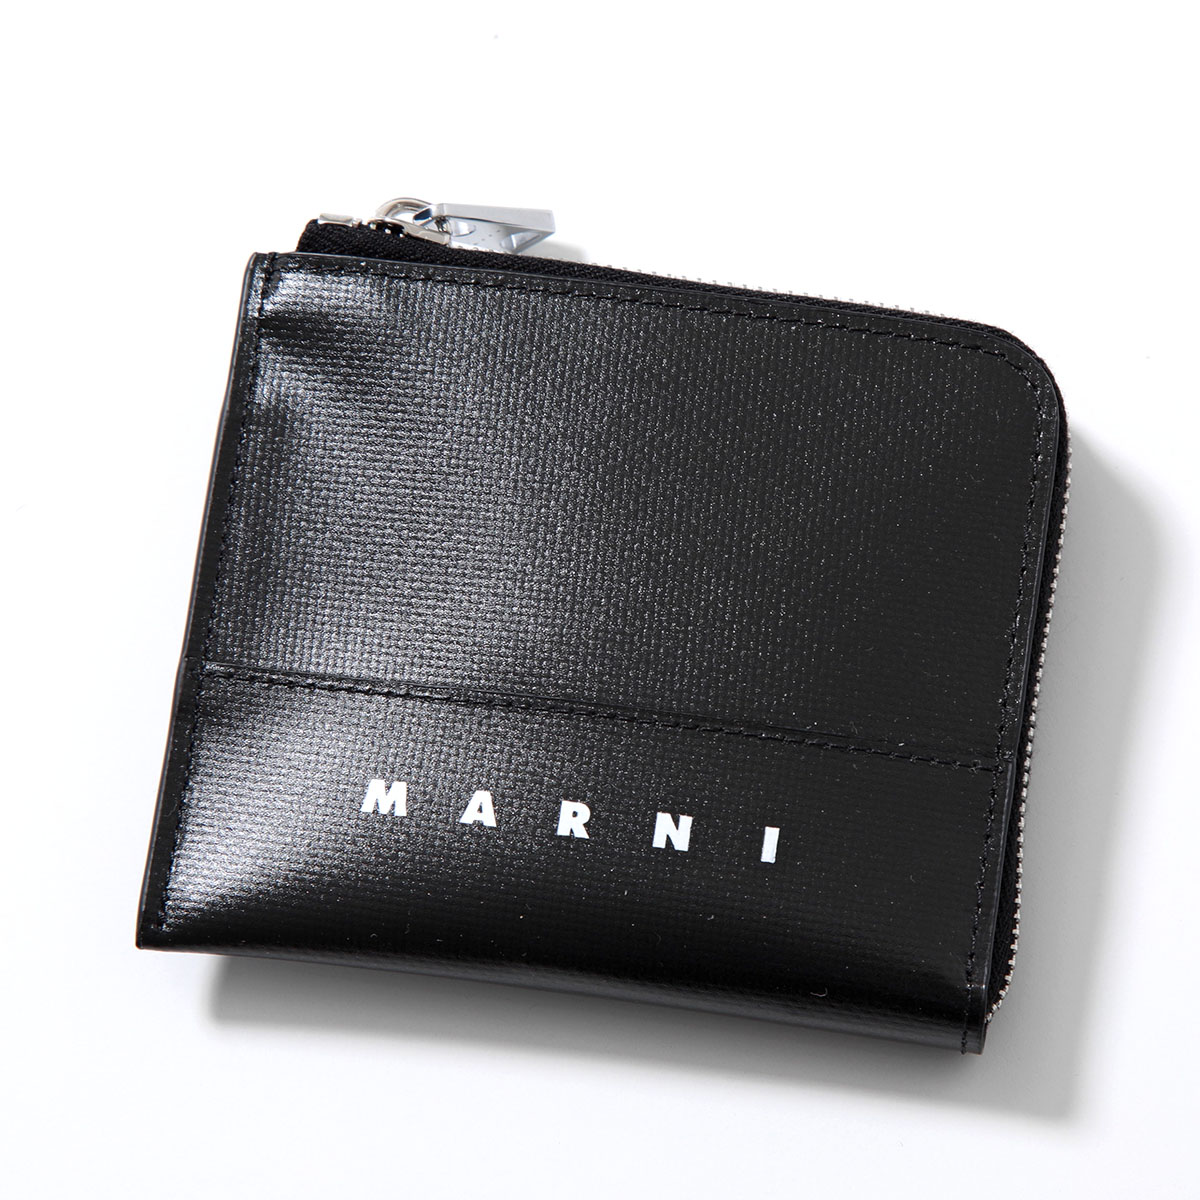 MARNI マルニ コインケース PFMI0075A0 P5769 メンズ ミニ財布 カードケース ...